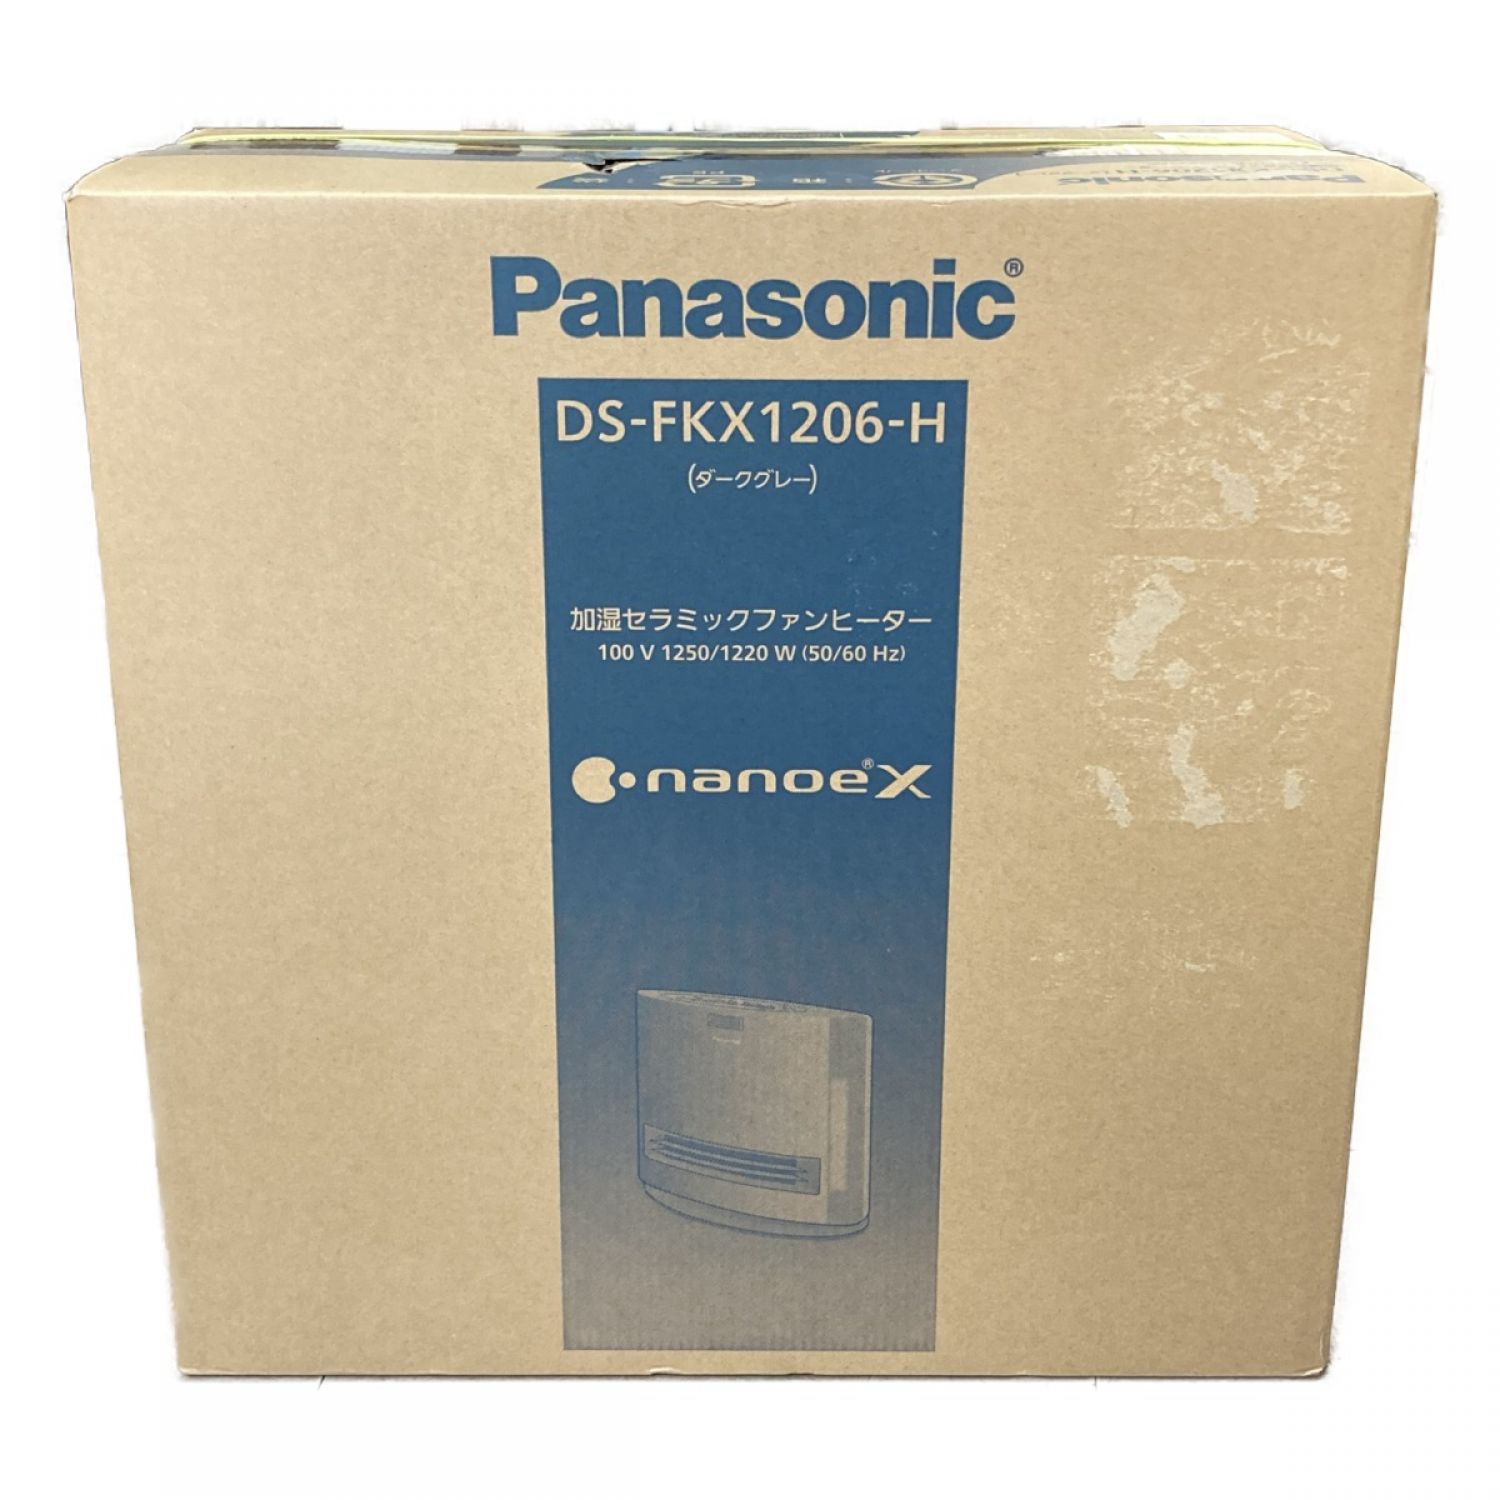 Panasonic パナソニック 加湿 ファンヒーター DS-FKX1206